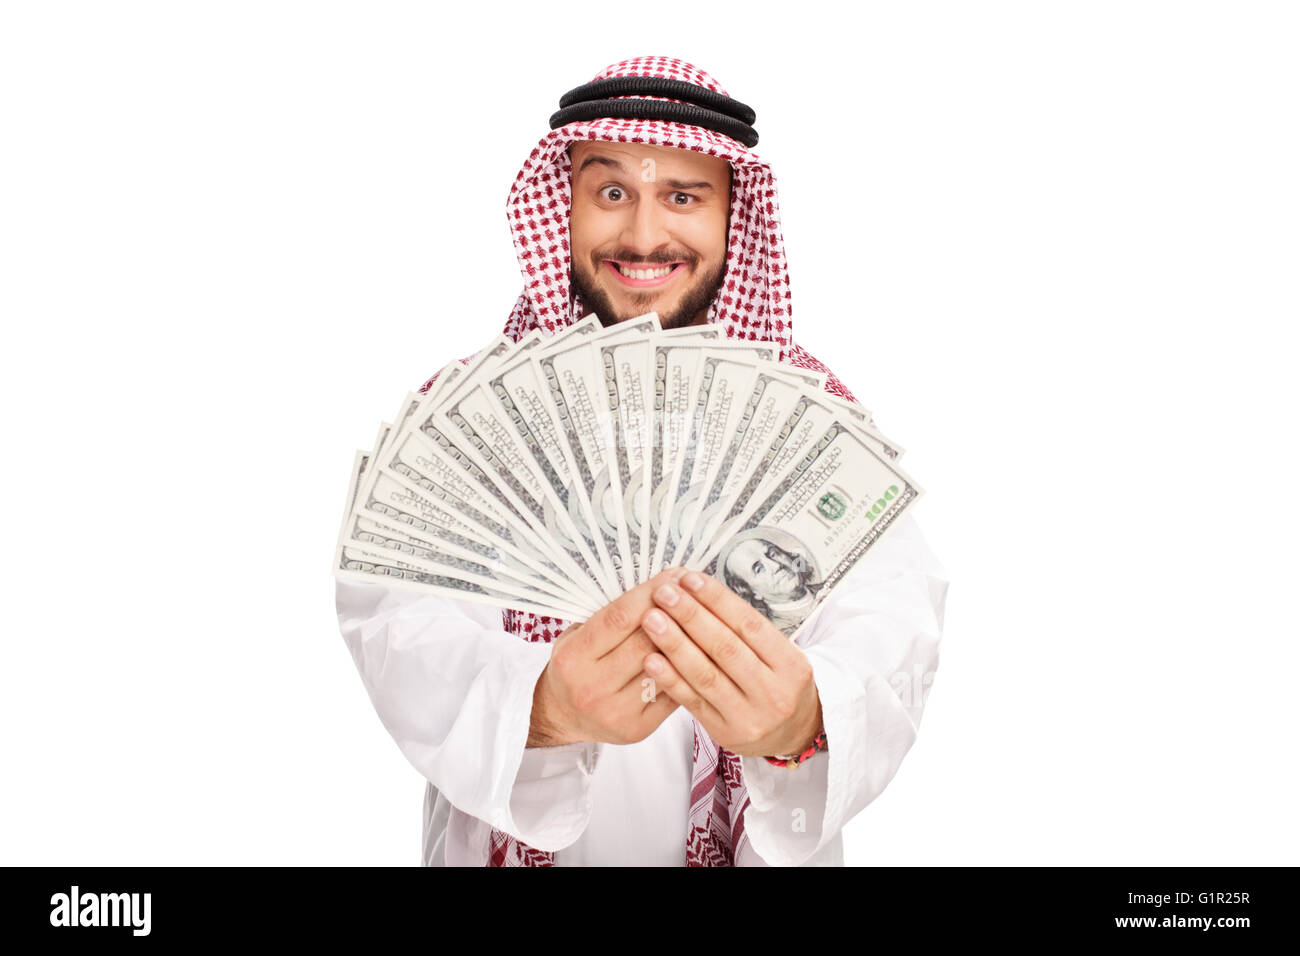 Joyful Arab holding a stack of money isolated on white background Stock Photo